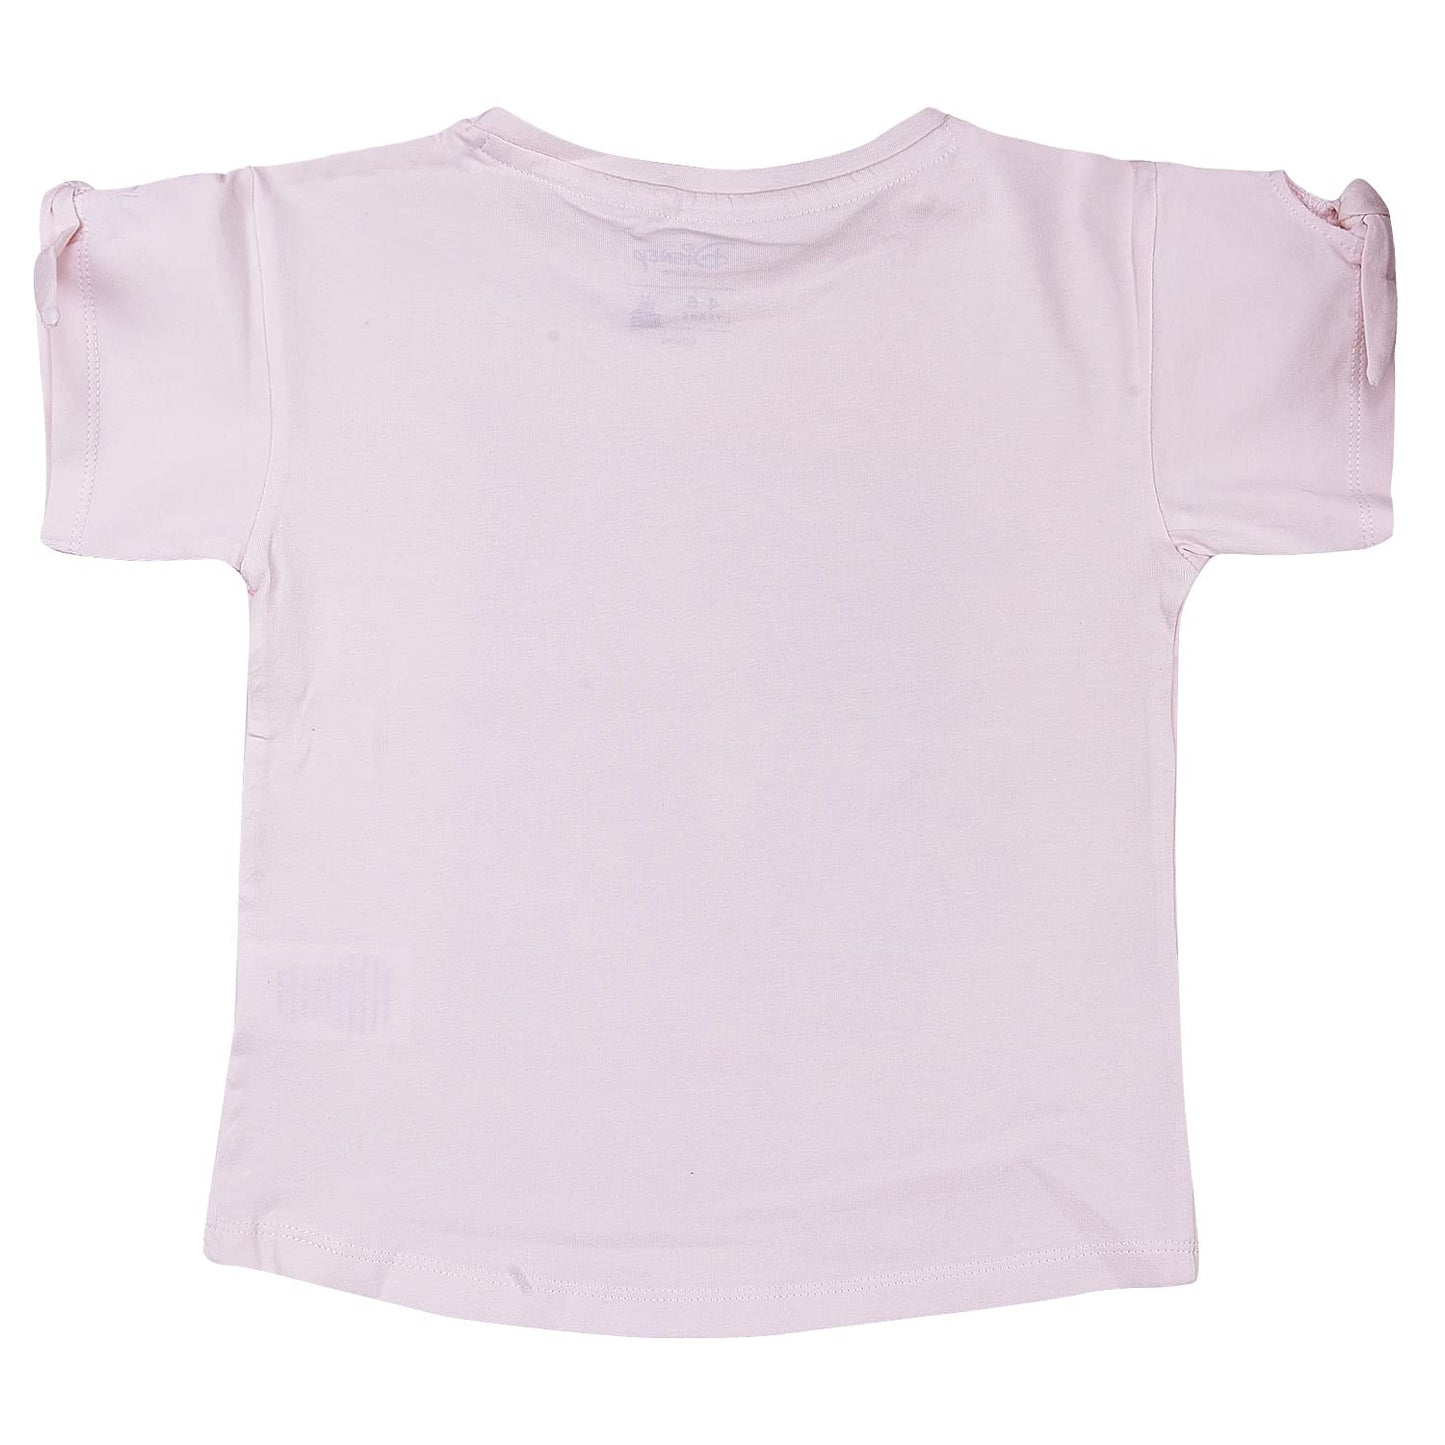 Wish Karo Baby Girls Printed T-Shirt for Girls-tsg003